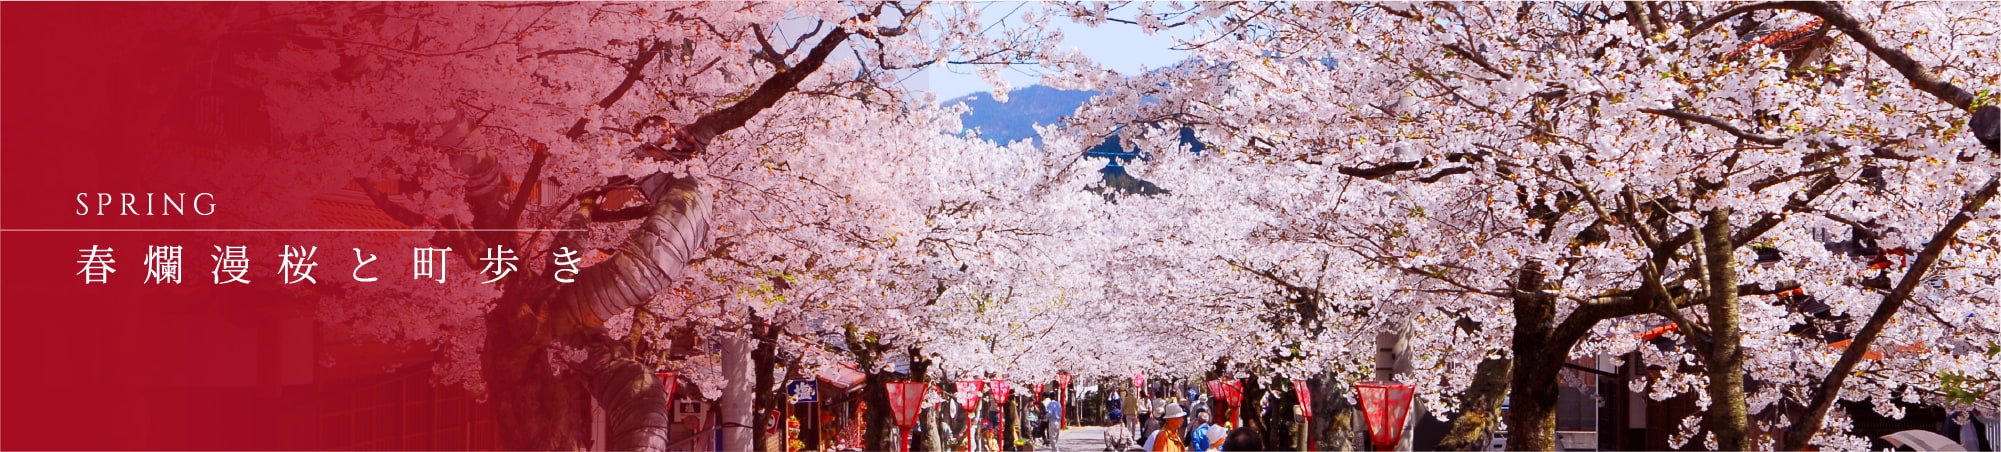 SPRING 春爛漫桜と町歩き